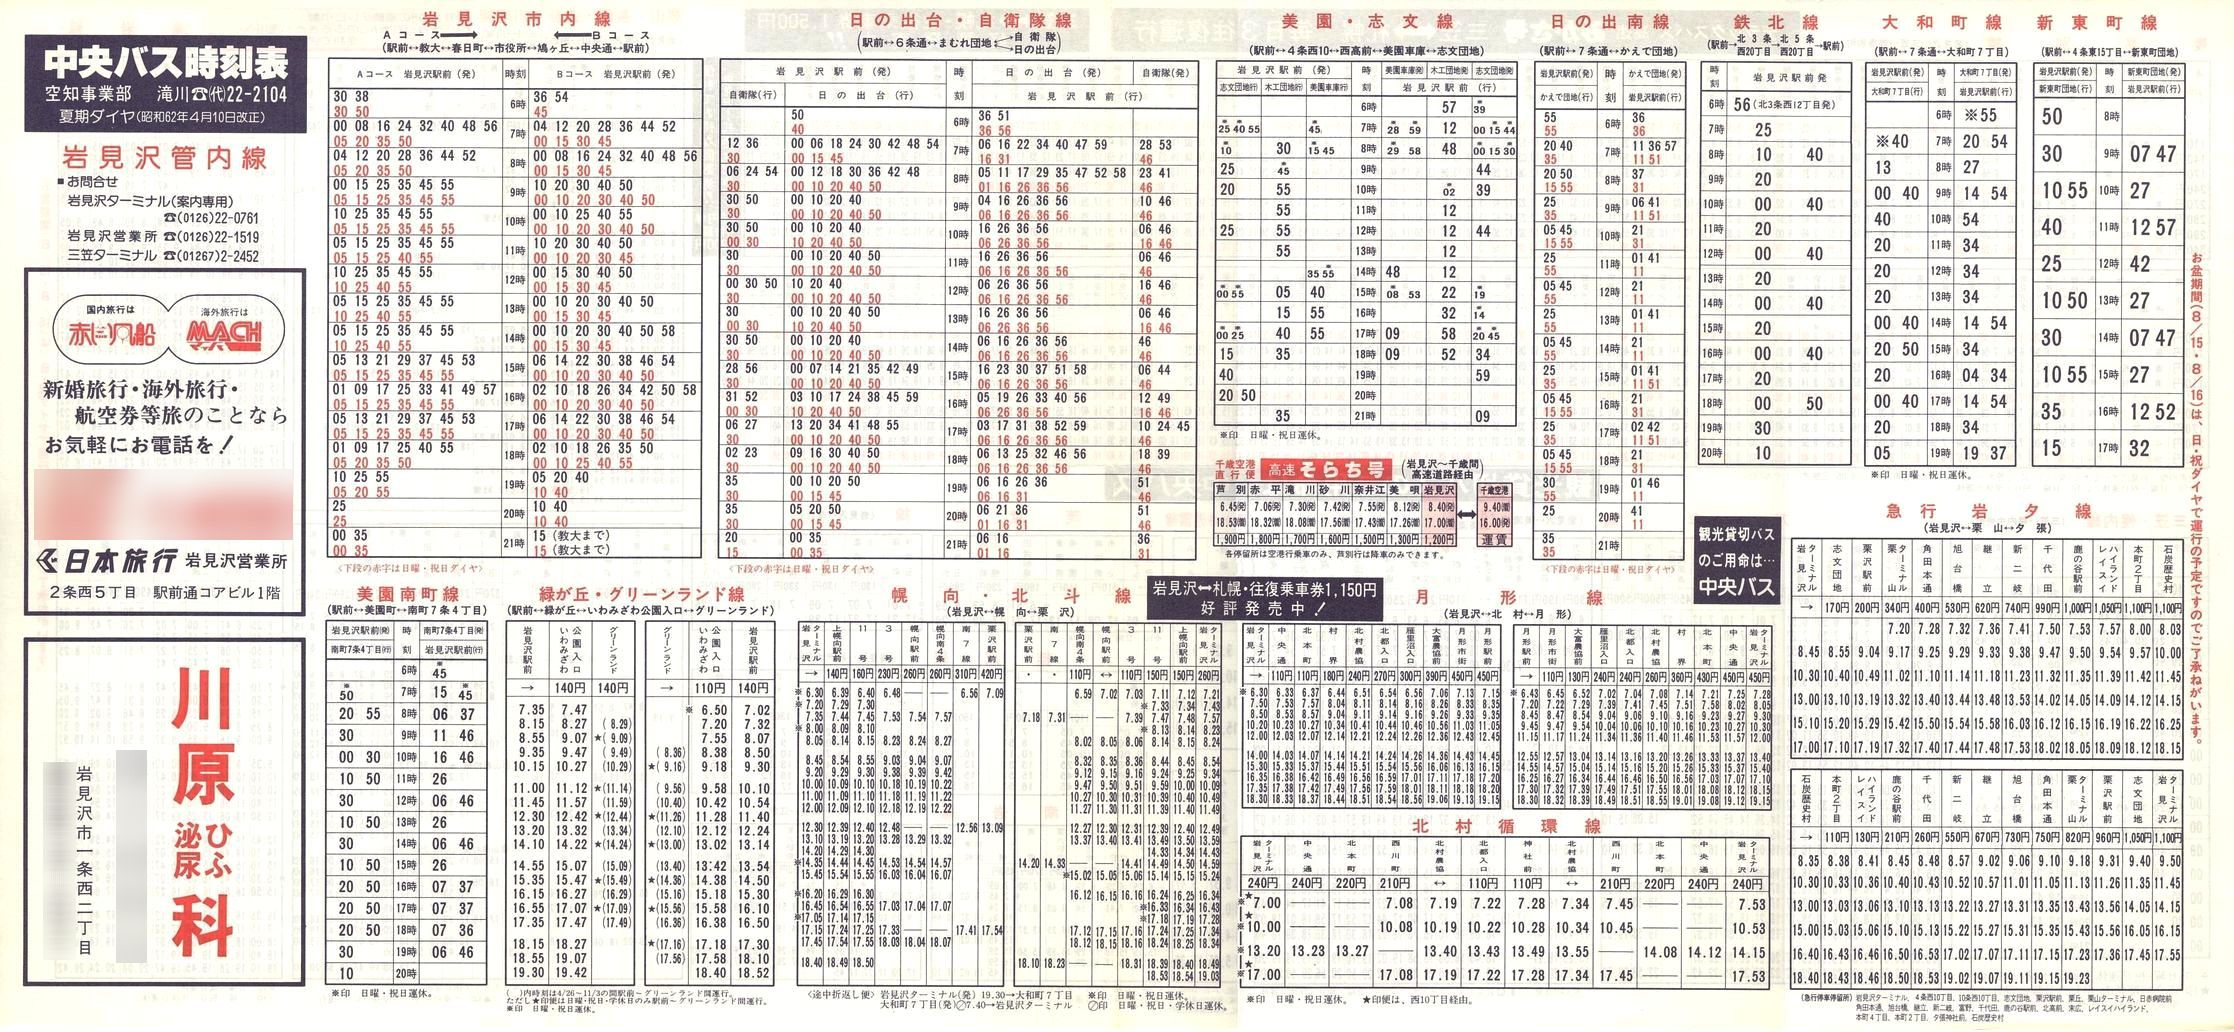 1987-04-10改正_北海道中央バス(空知)_岩見沢管内線時刻表表面